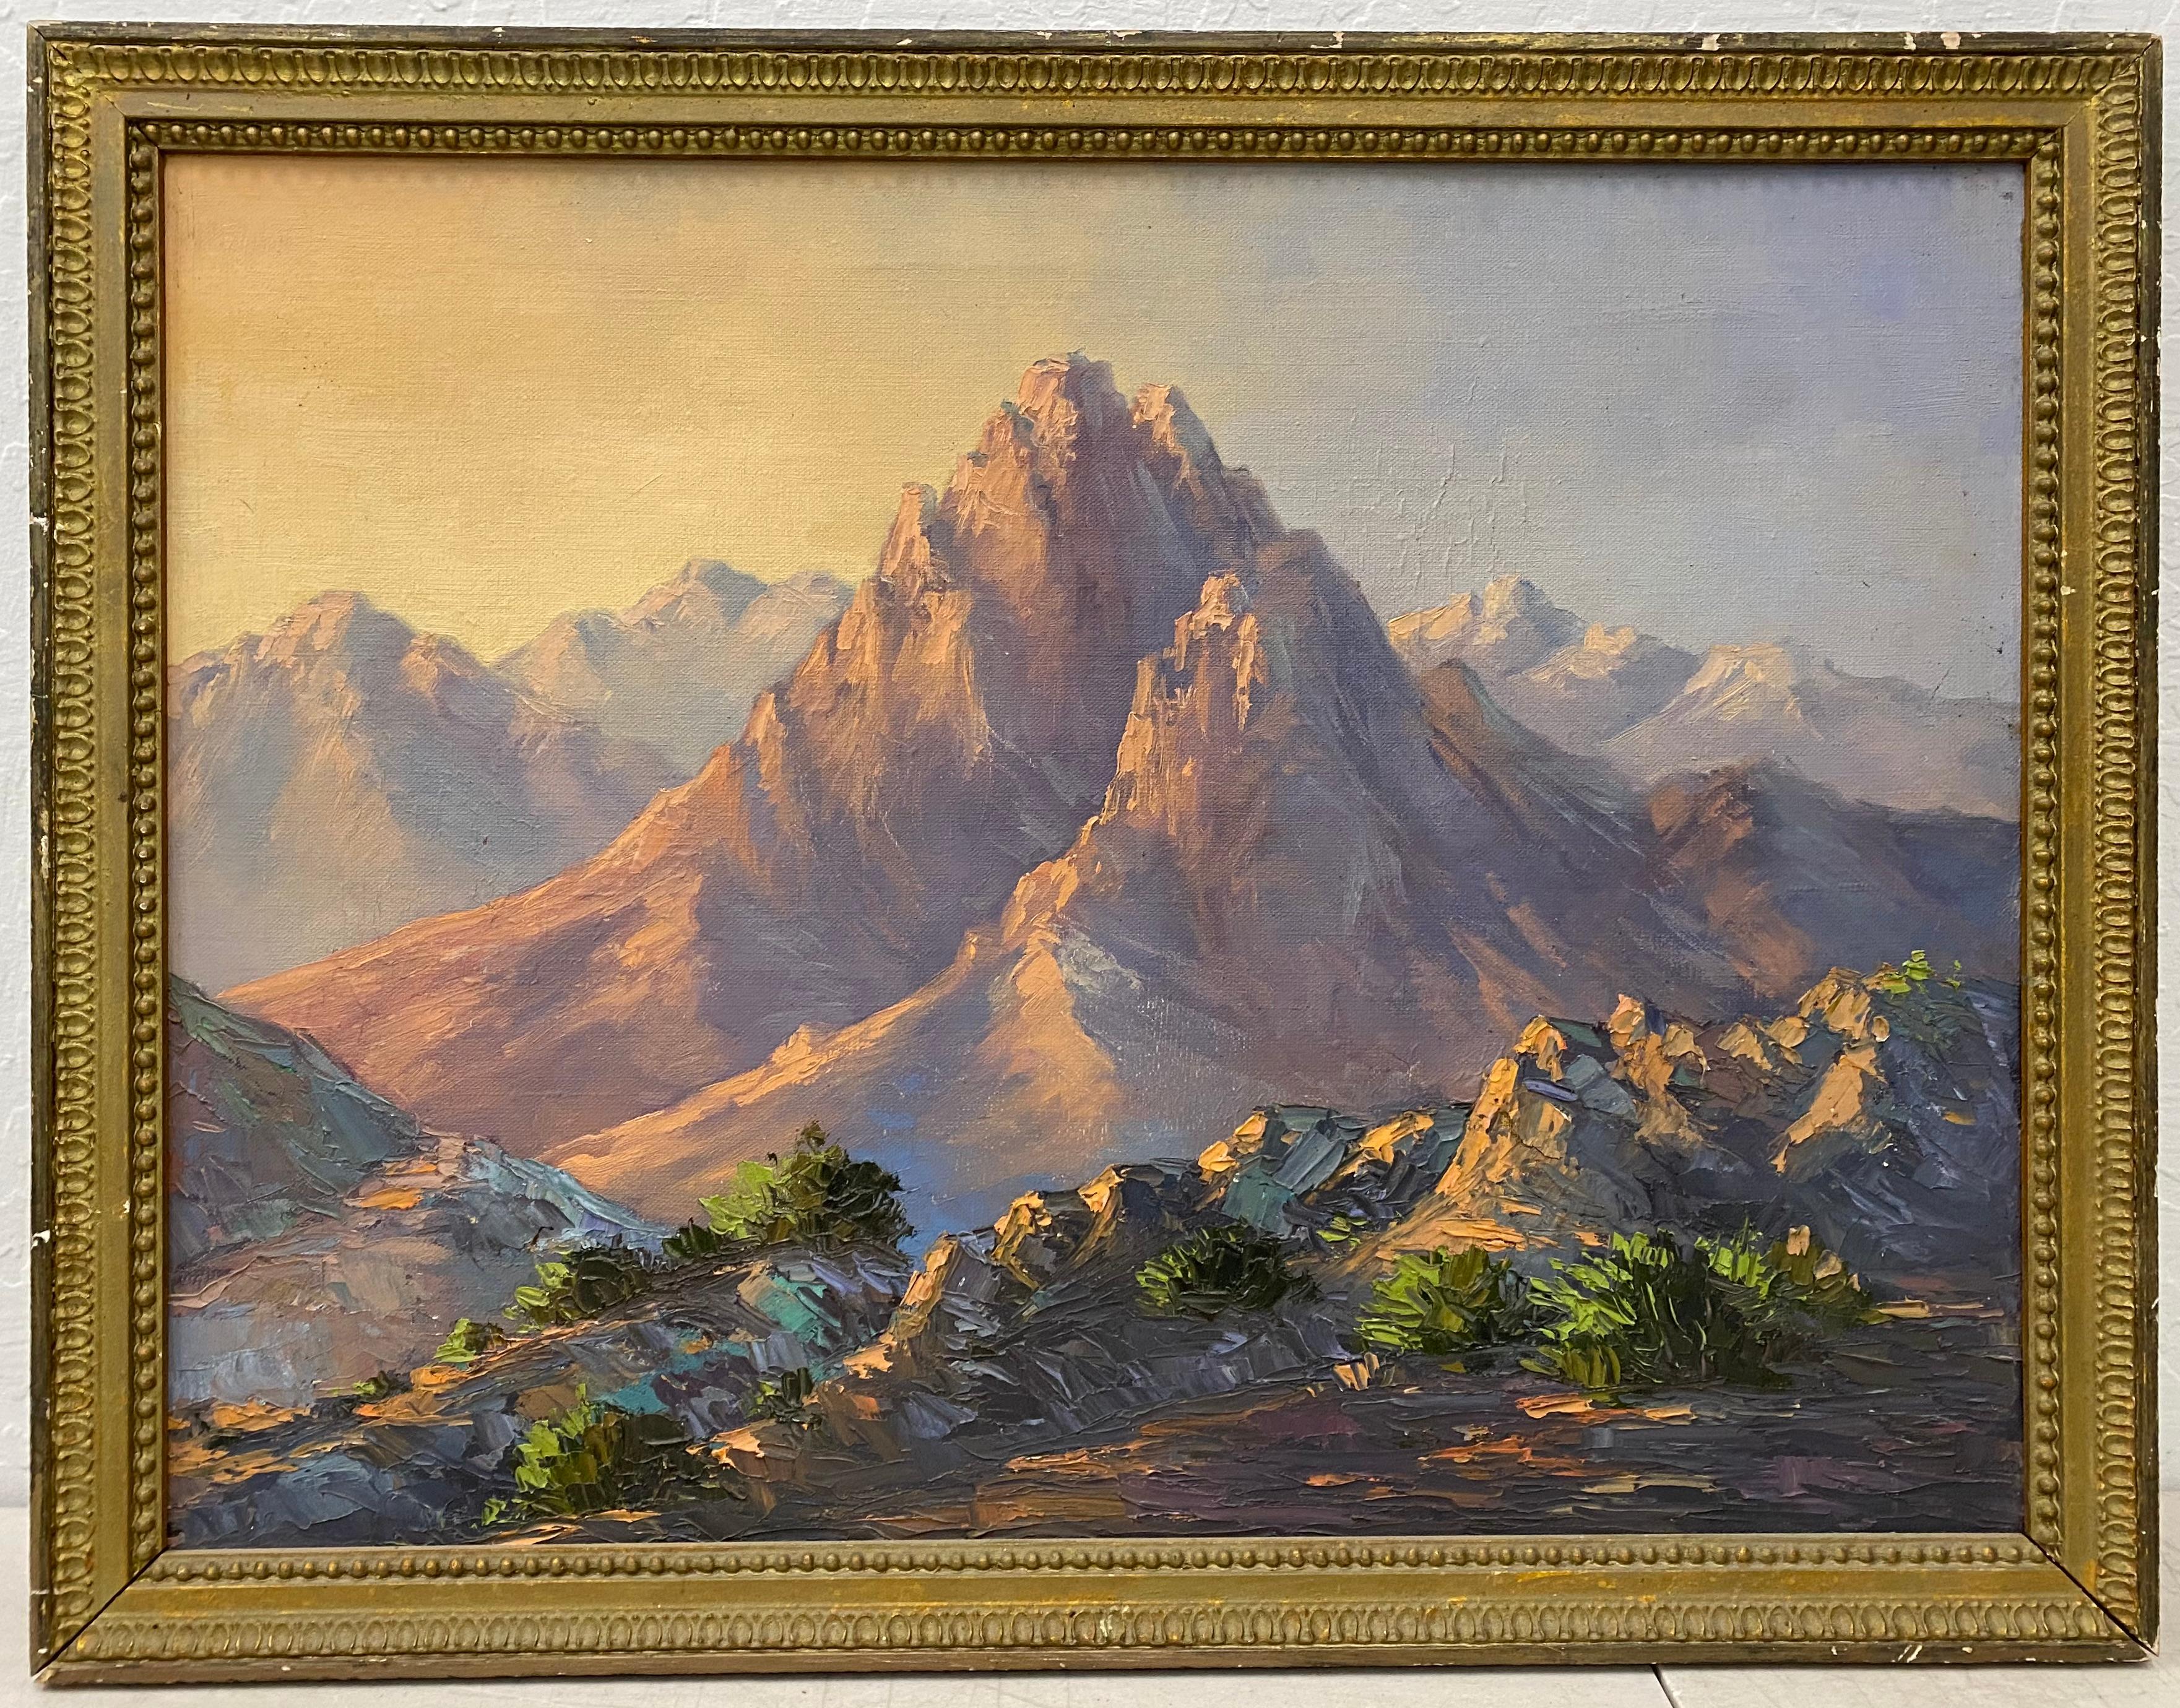 Unknown Landscape Painting – Majestic Mountain Landscape, Ölgemälde, ca. 1940